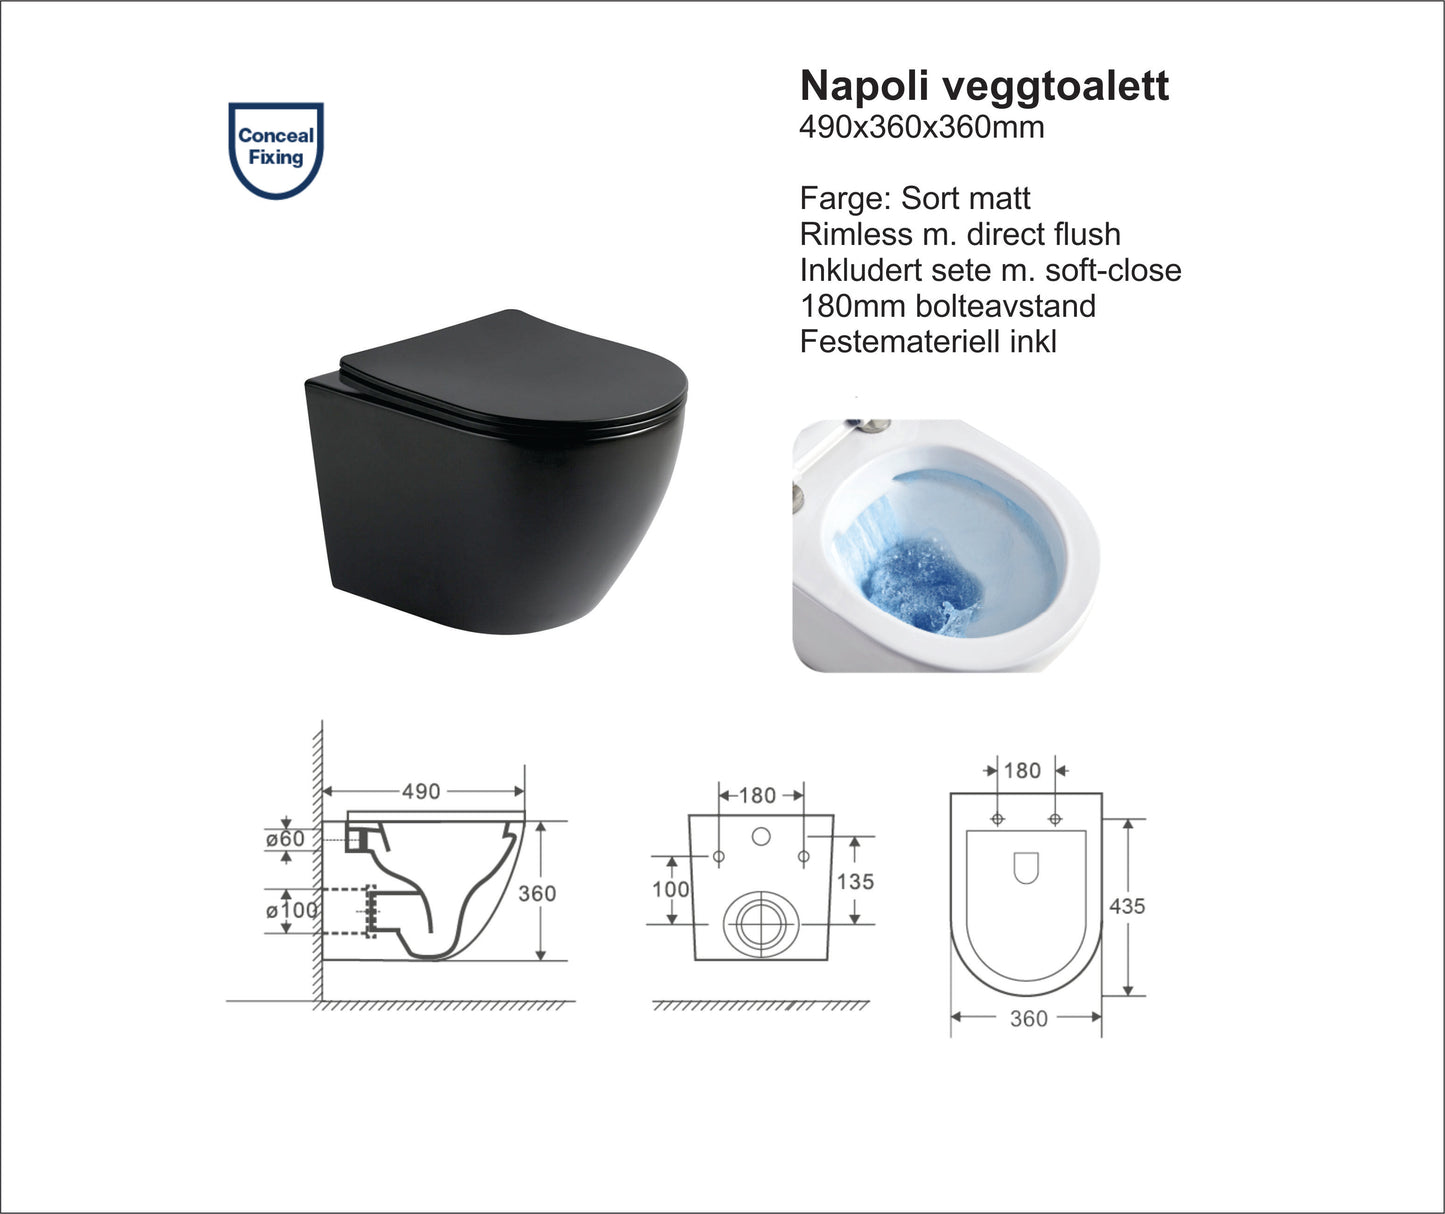 Napoli sort matt toalettpakke, veggskål, softclose sete og standard sisterne